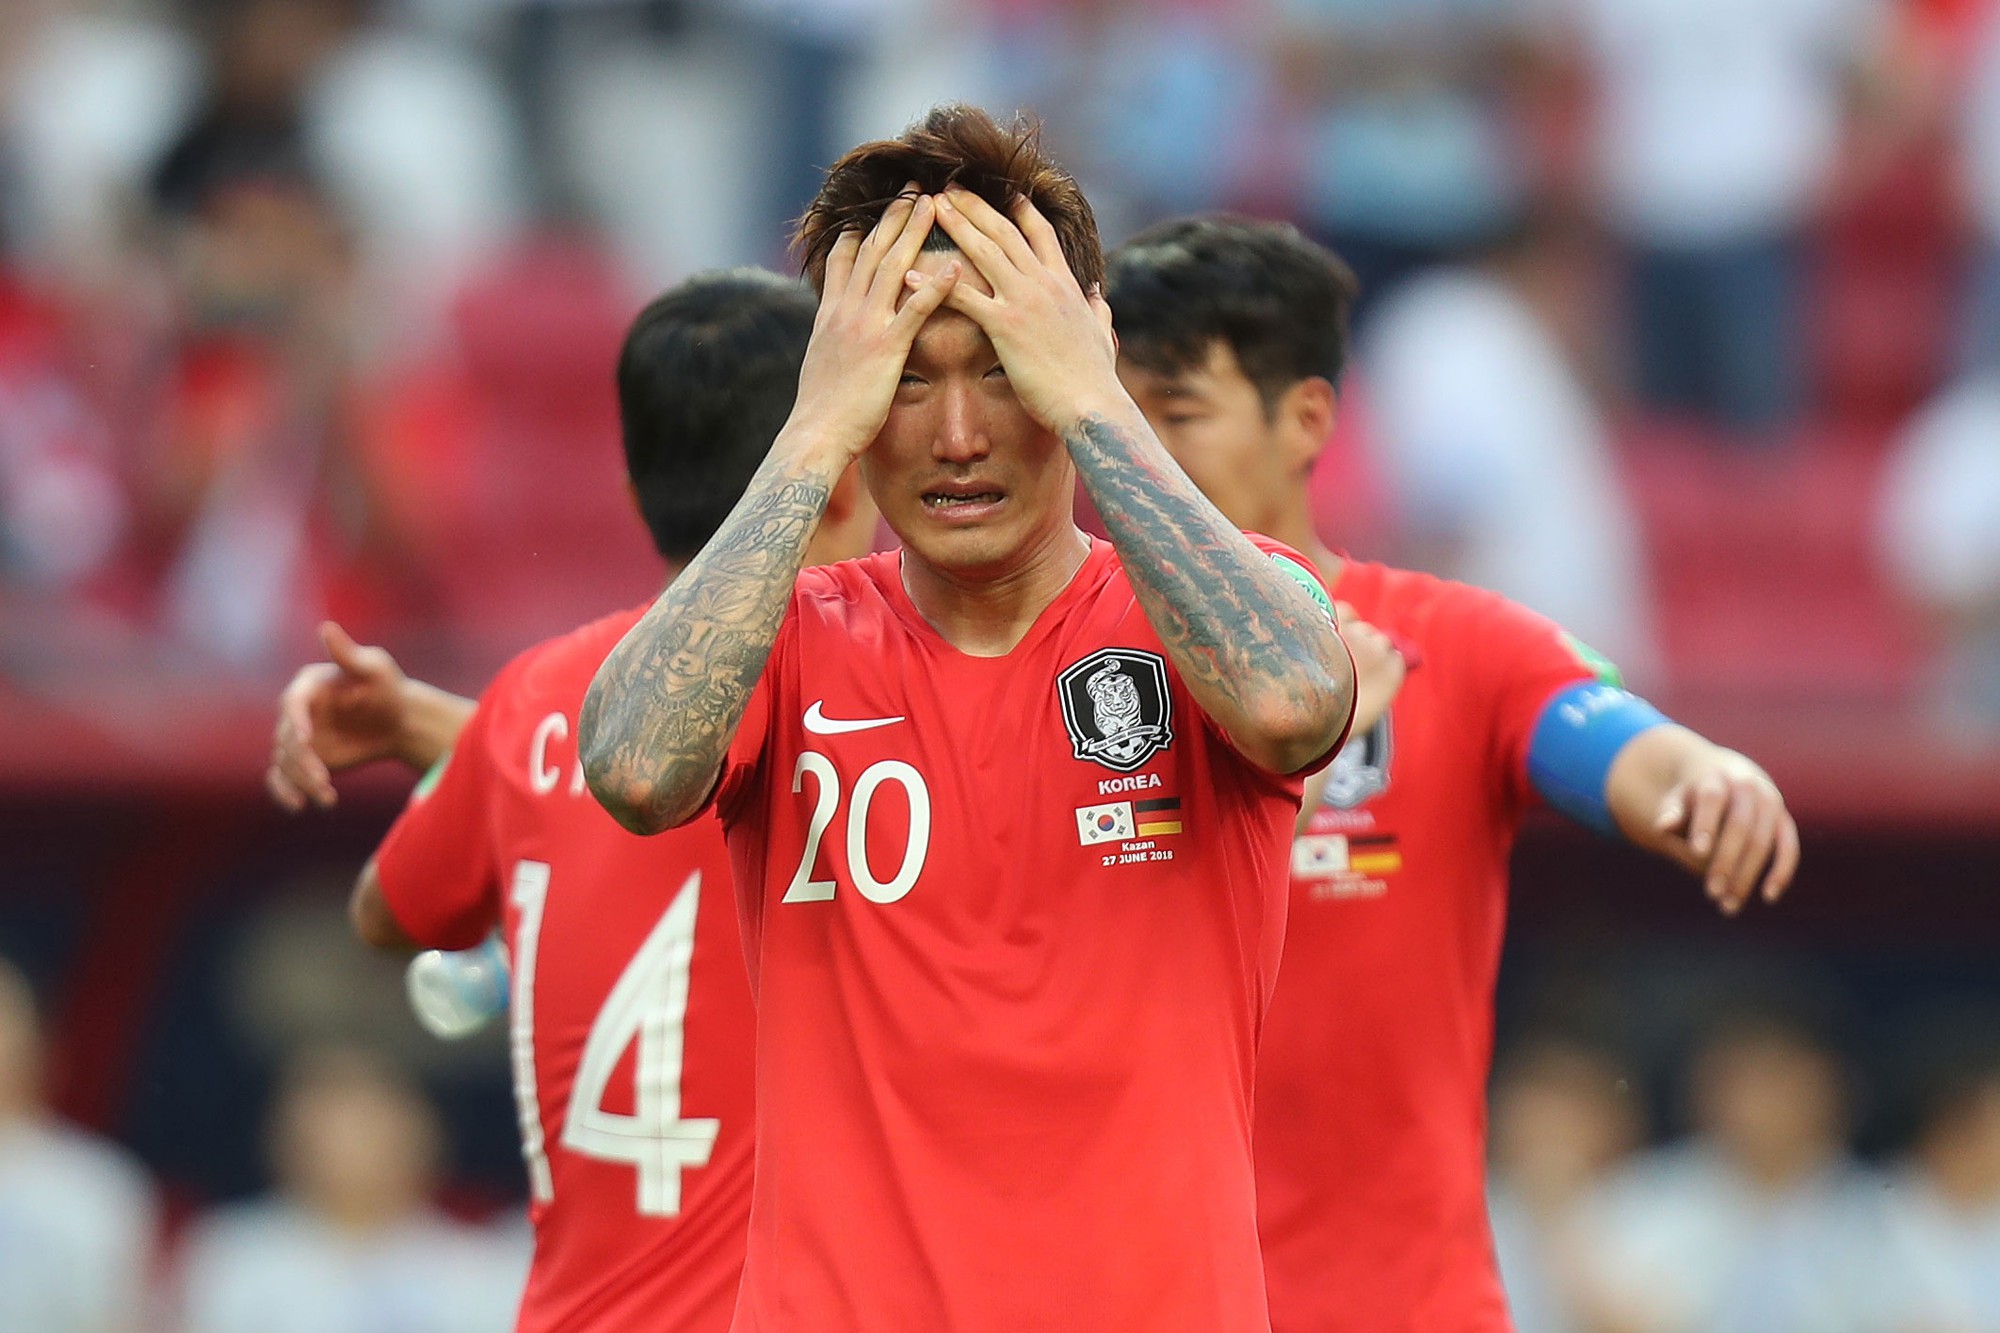 Cầu thủ Hàn Quốc bật khóc, vỡ òa sau chiến tích loại nhà vô địch Đức - Ảnh 6.